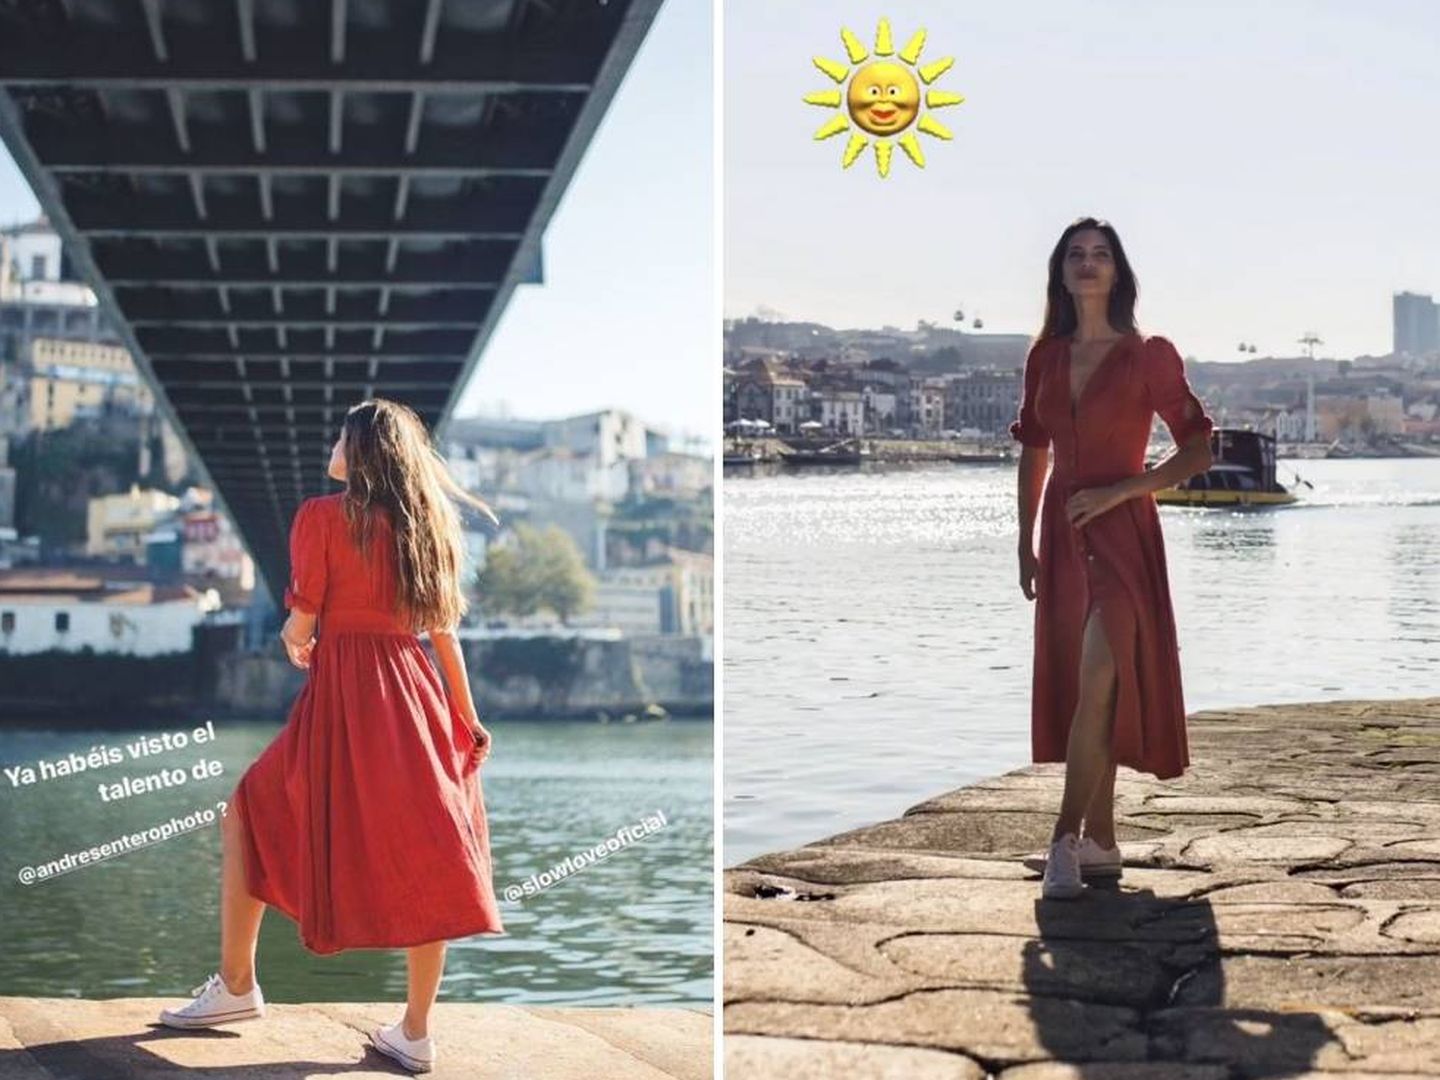 La periodista posa con su vestido. (Instagram Stories de Sara Carbonero)